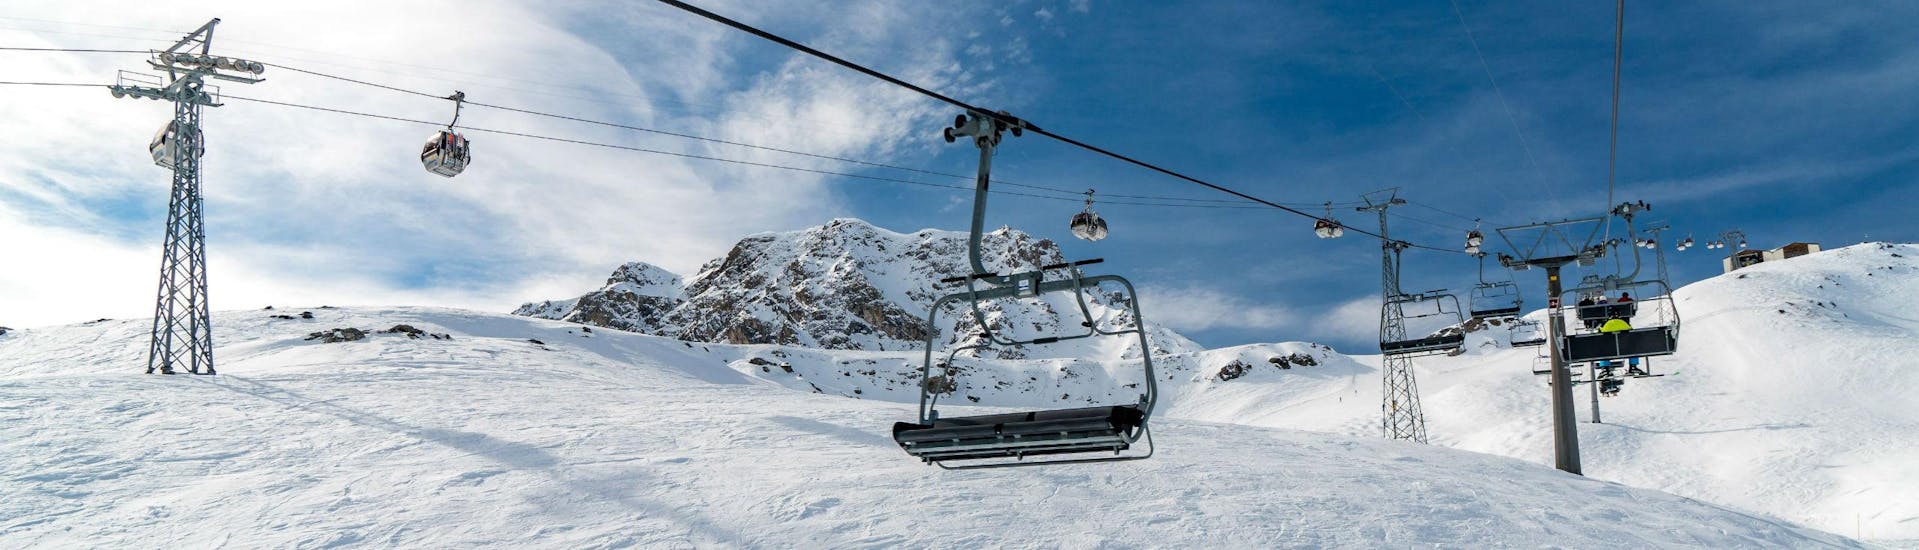 Ein Bild eines Sessellifts und einer Gondel im schweizerischen Skigebiet Arosa, wo örtliche Skischulen ihre Skikurse für Besucher, die das Skifahren lernen wollen, anbieten.